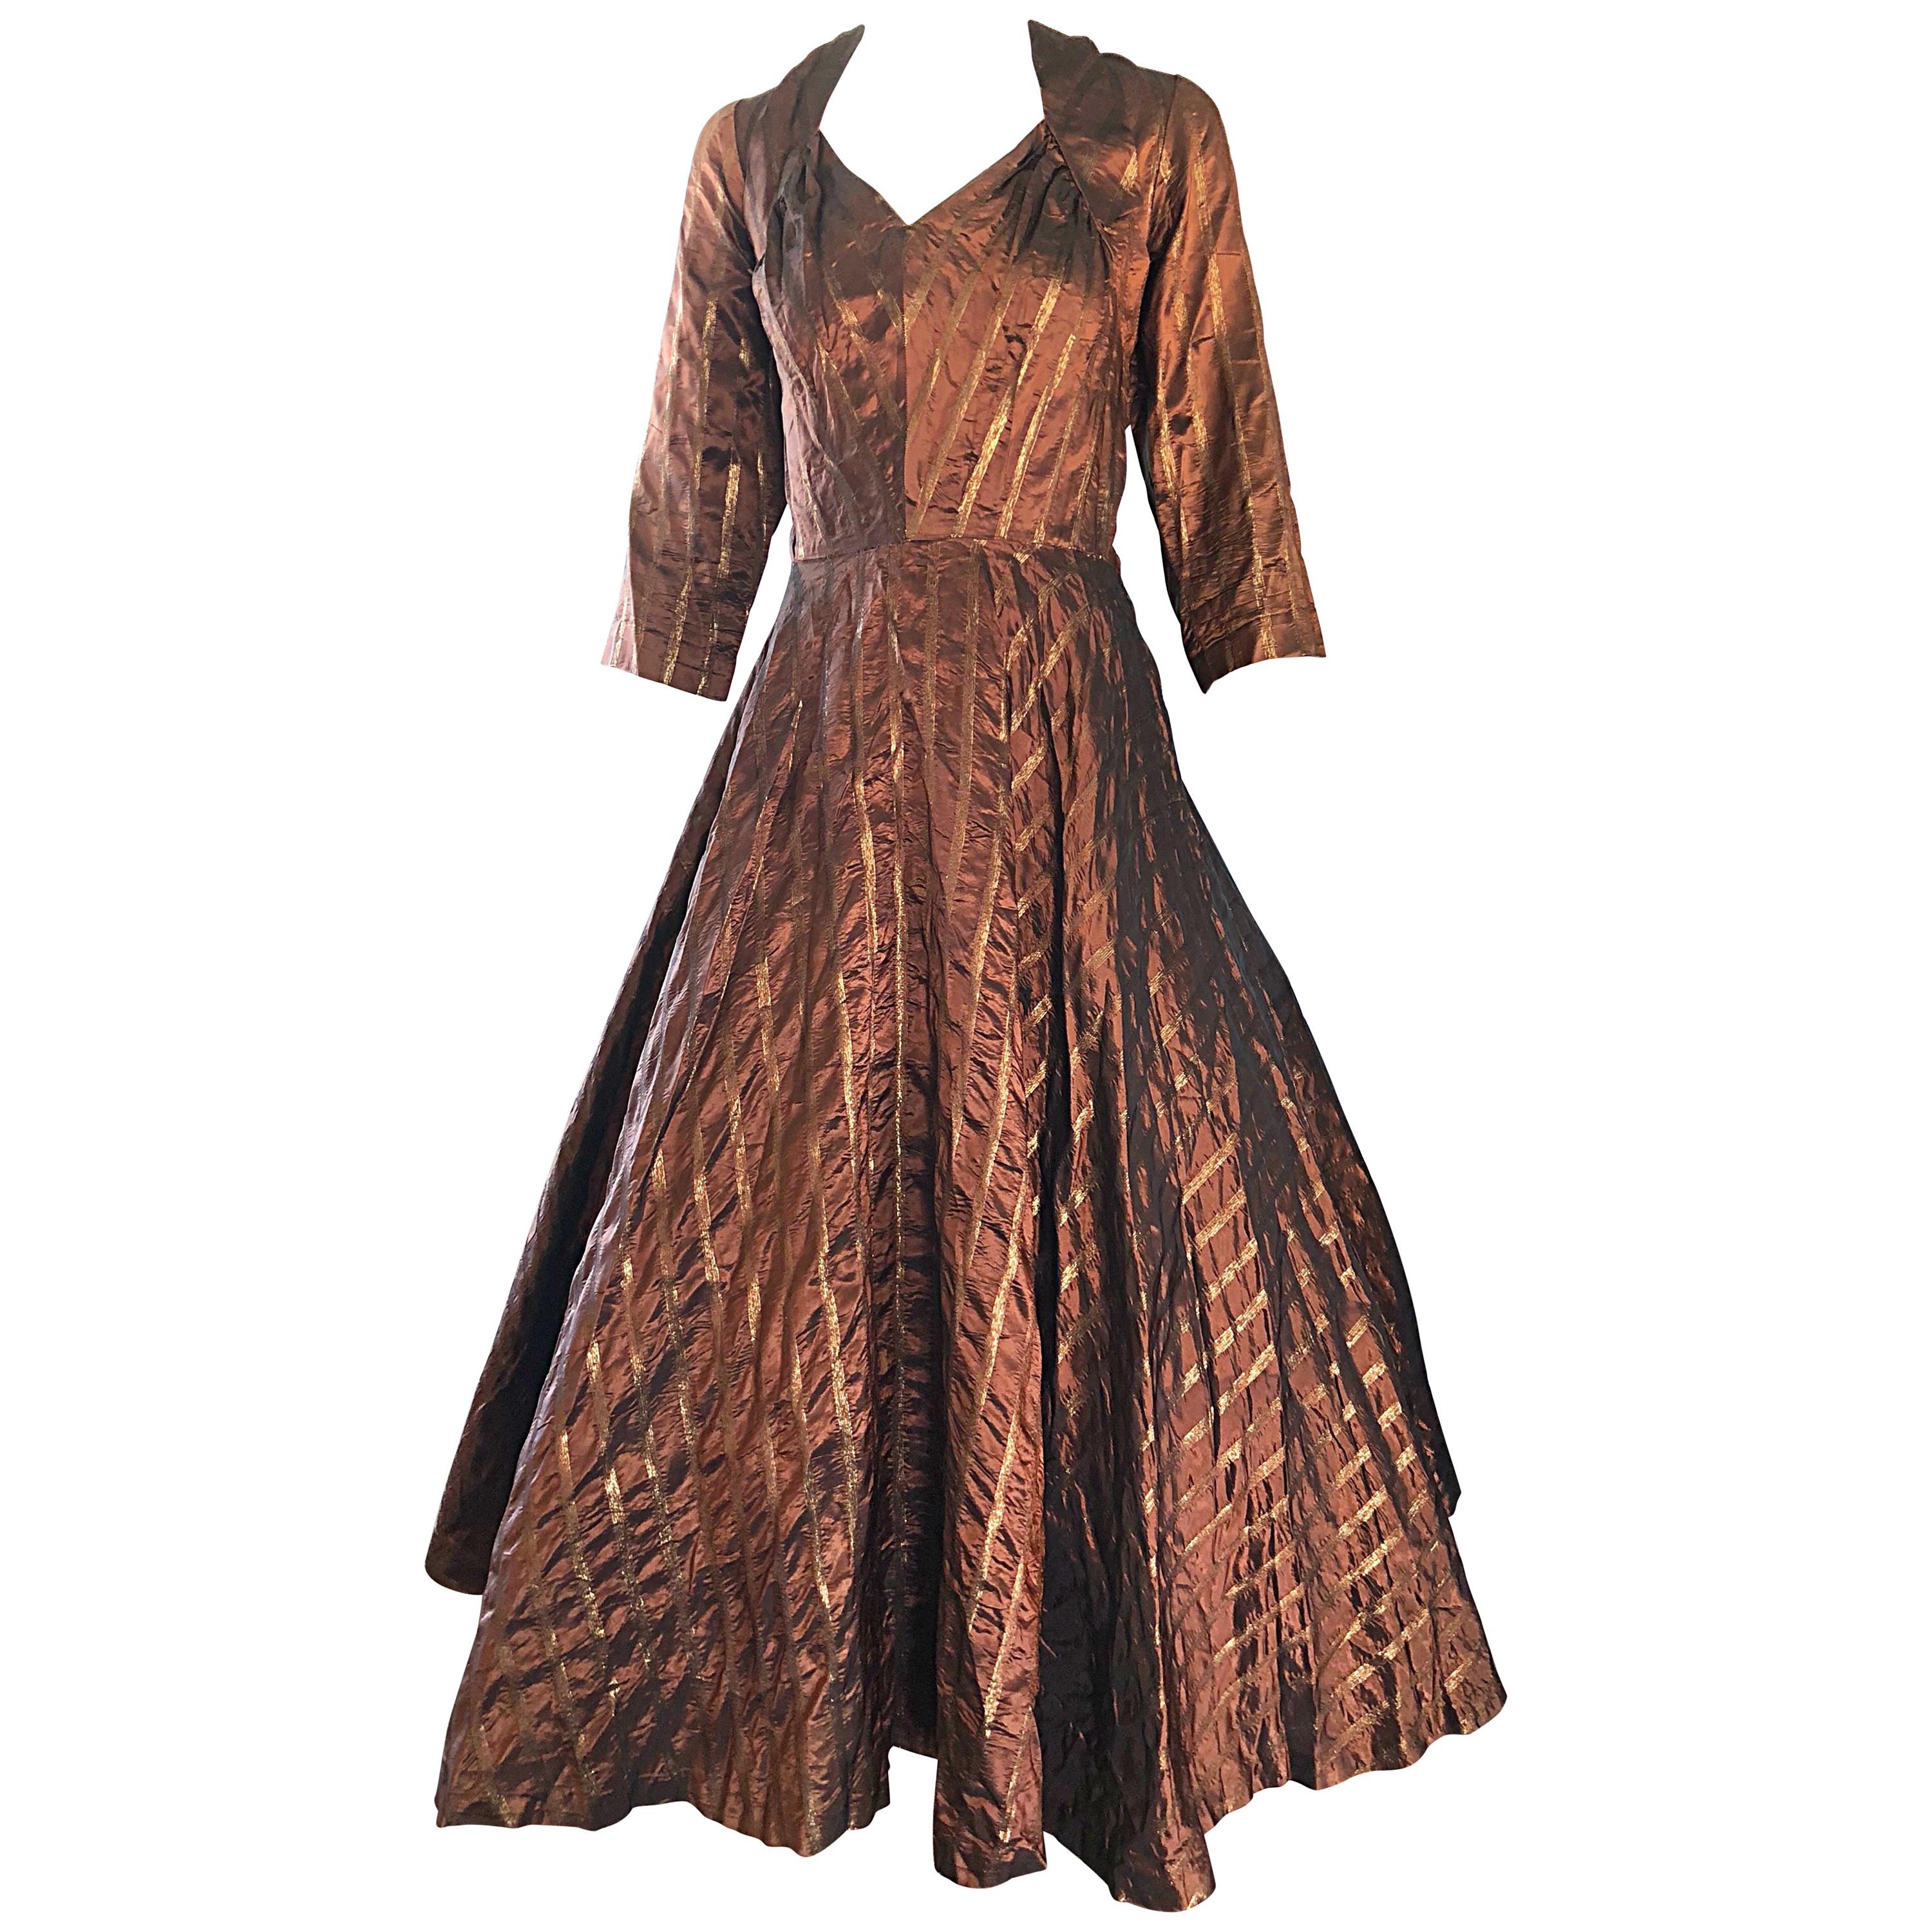 Gorgeous 1950s Donald Originals Copper / Bronze Size 10 / 12 Silk Vintage Dress